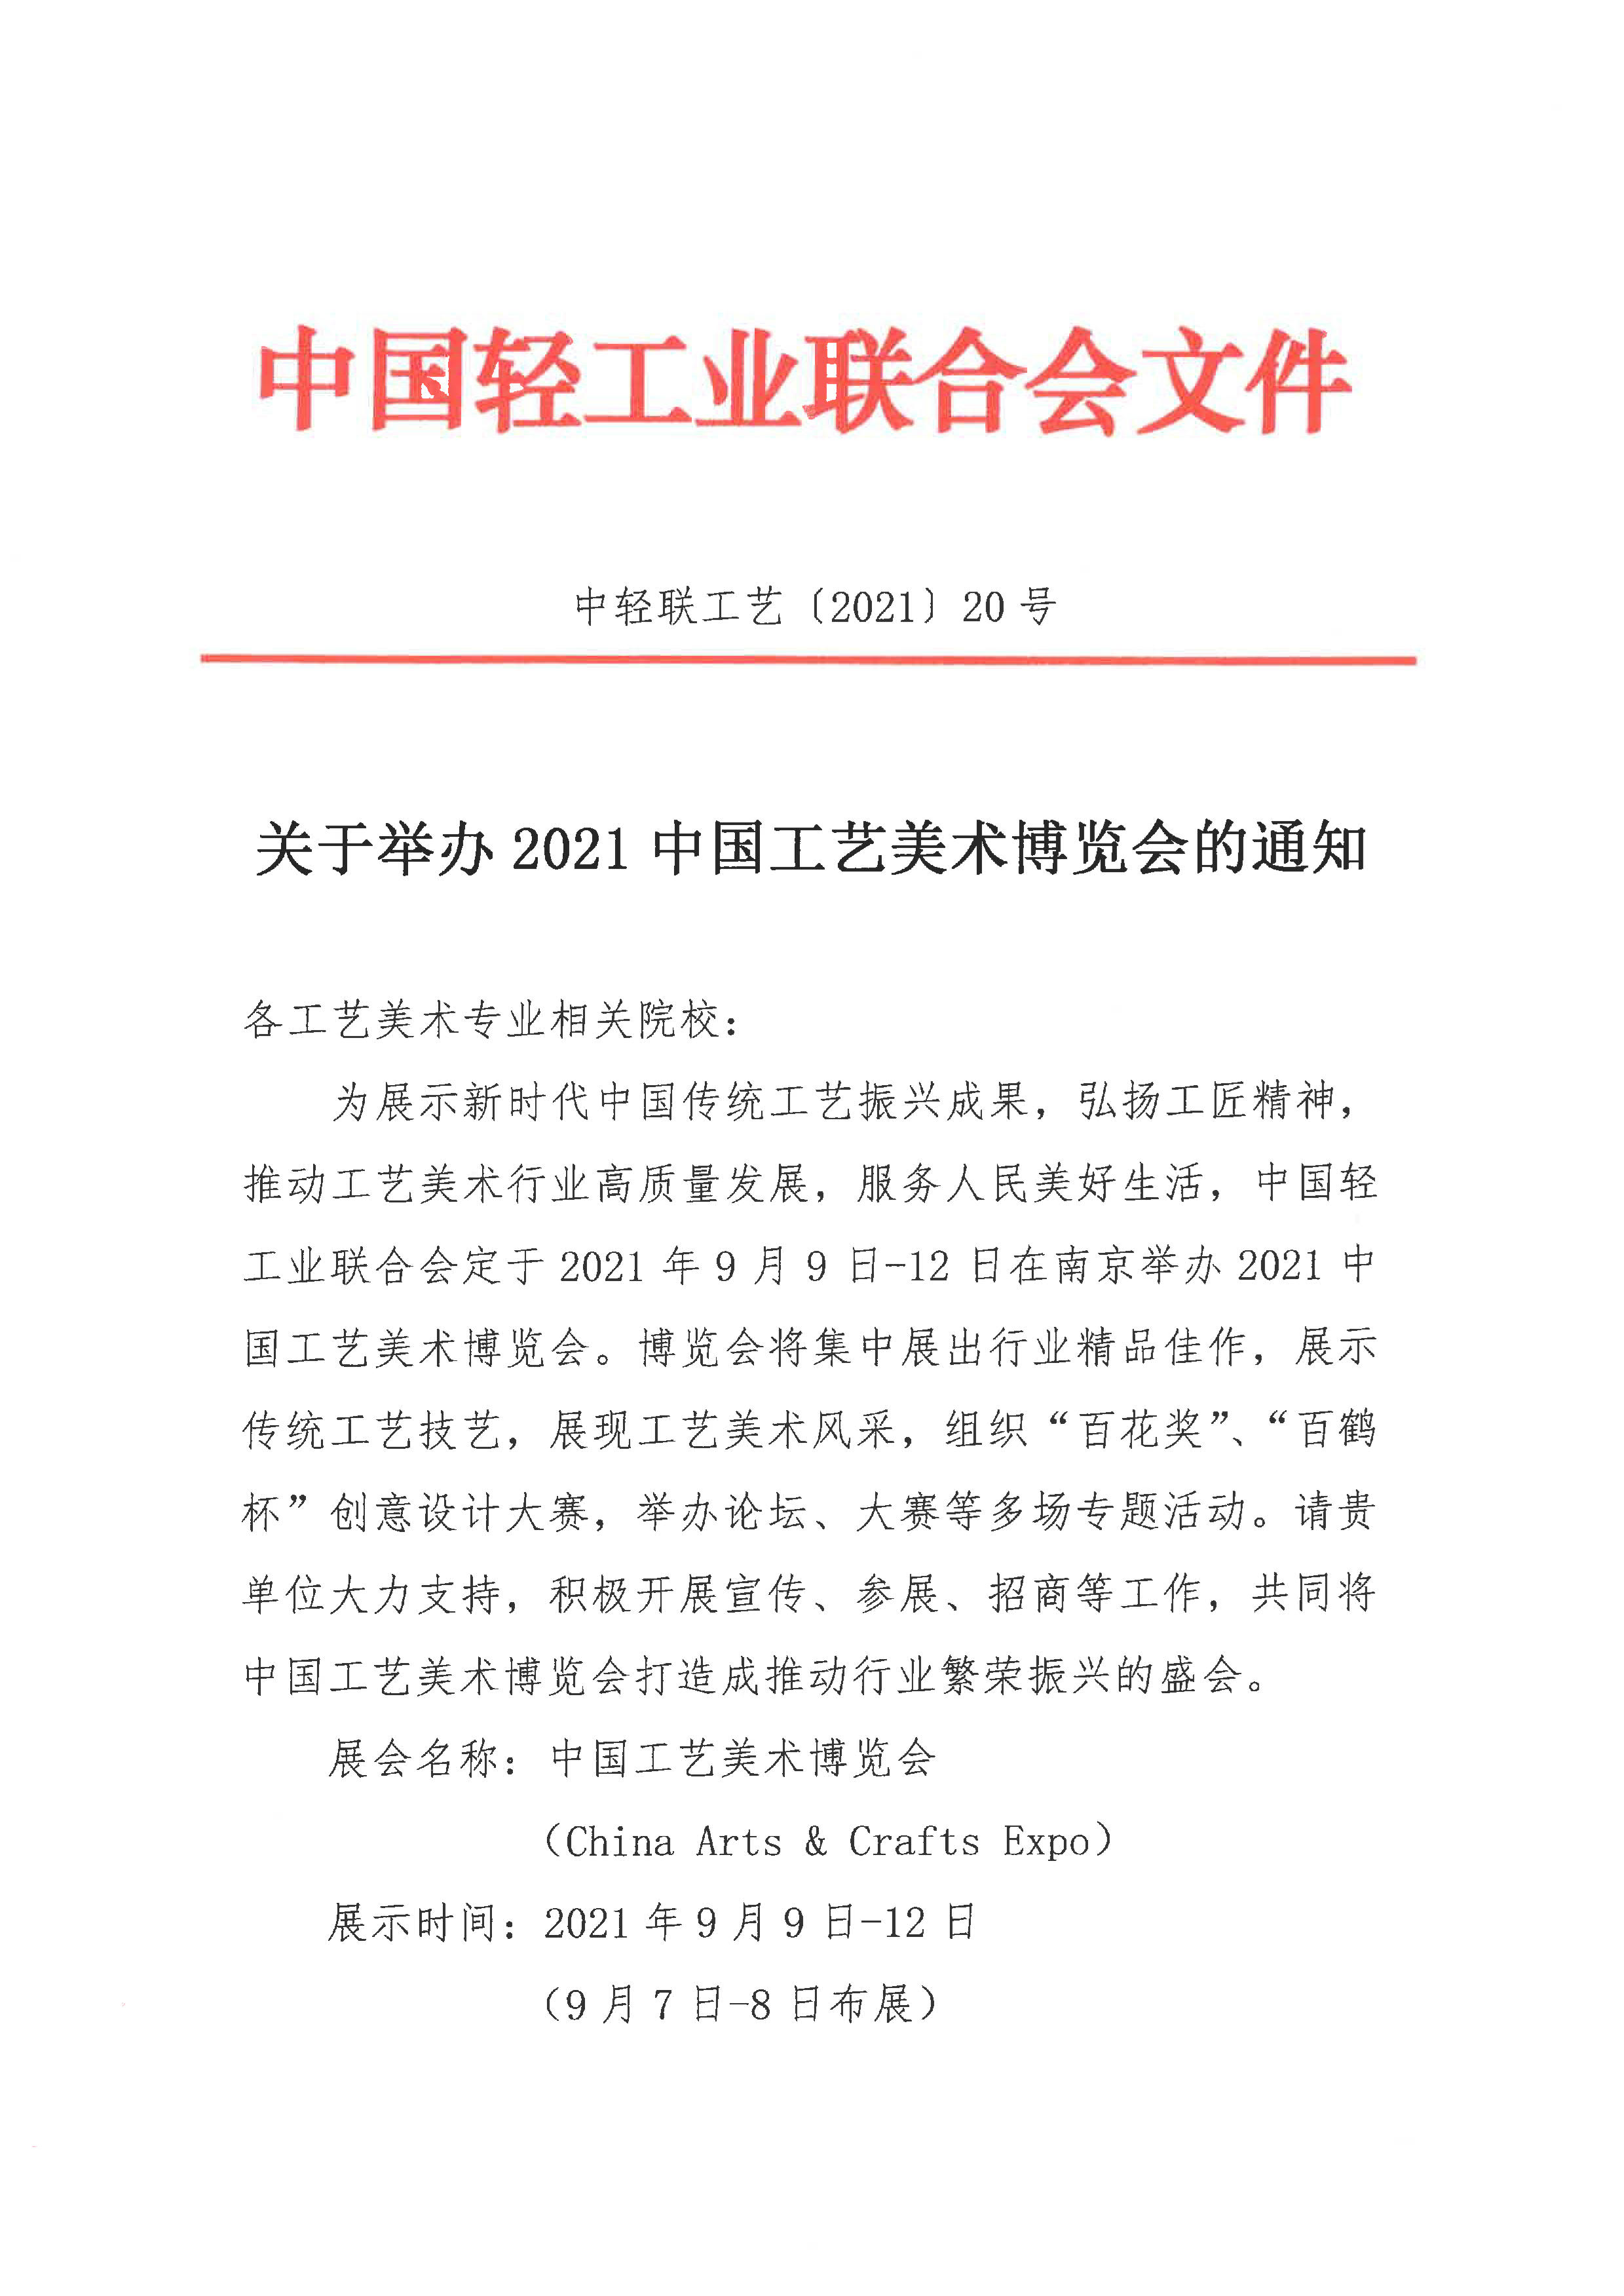 关于举办2021中国工艺美术博览会的通知（院校）_1.jpg